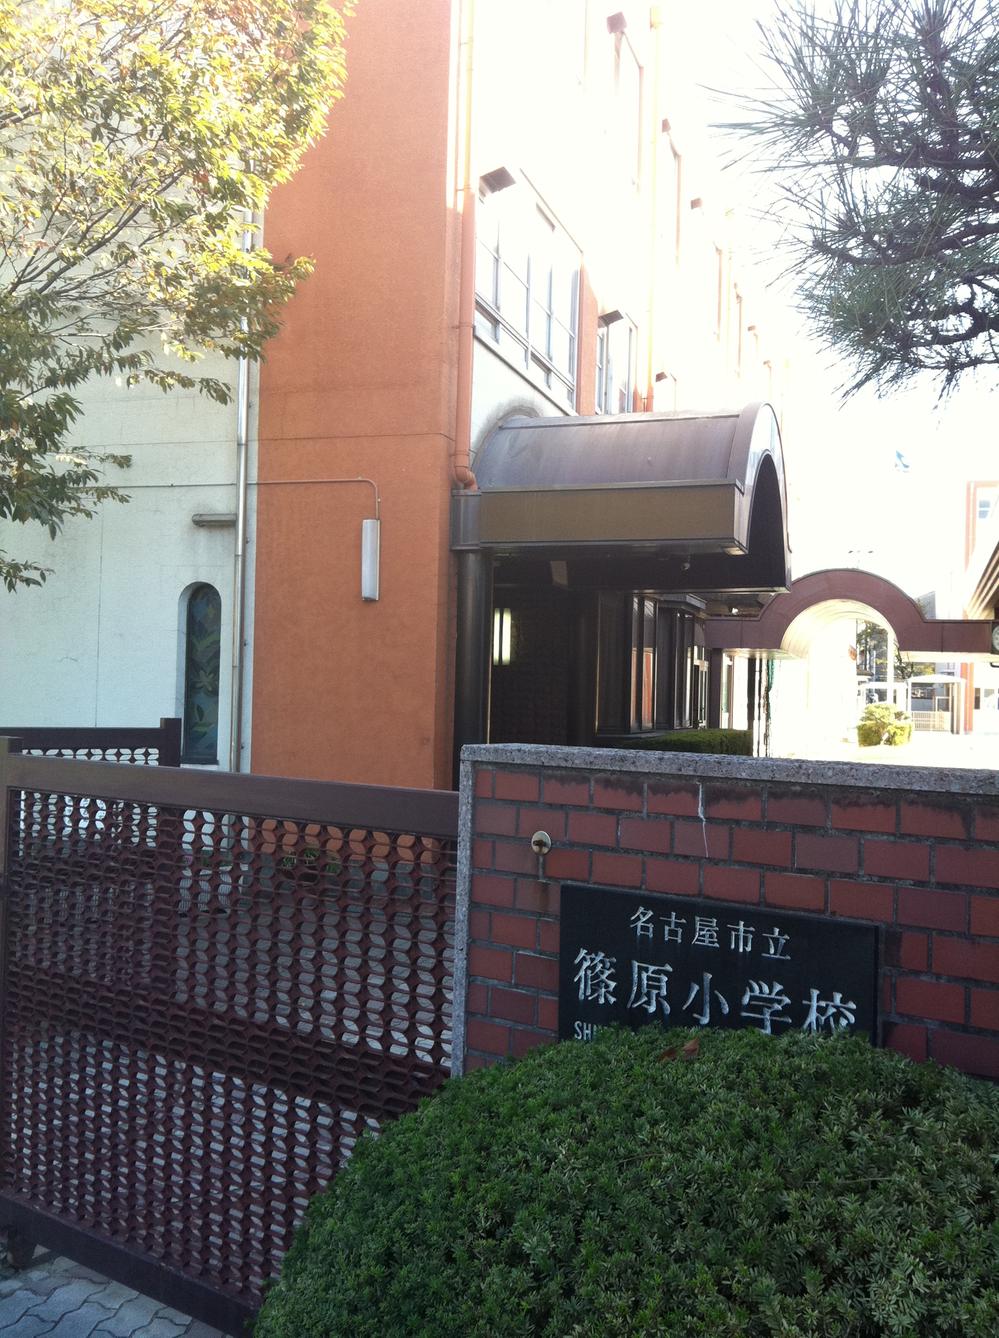 Primary school. 338m to Nagoya City Shinohara Elementary School